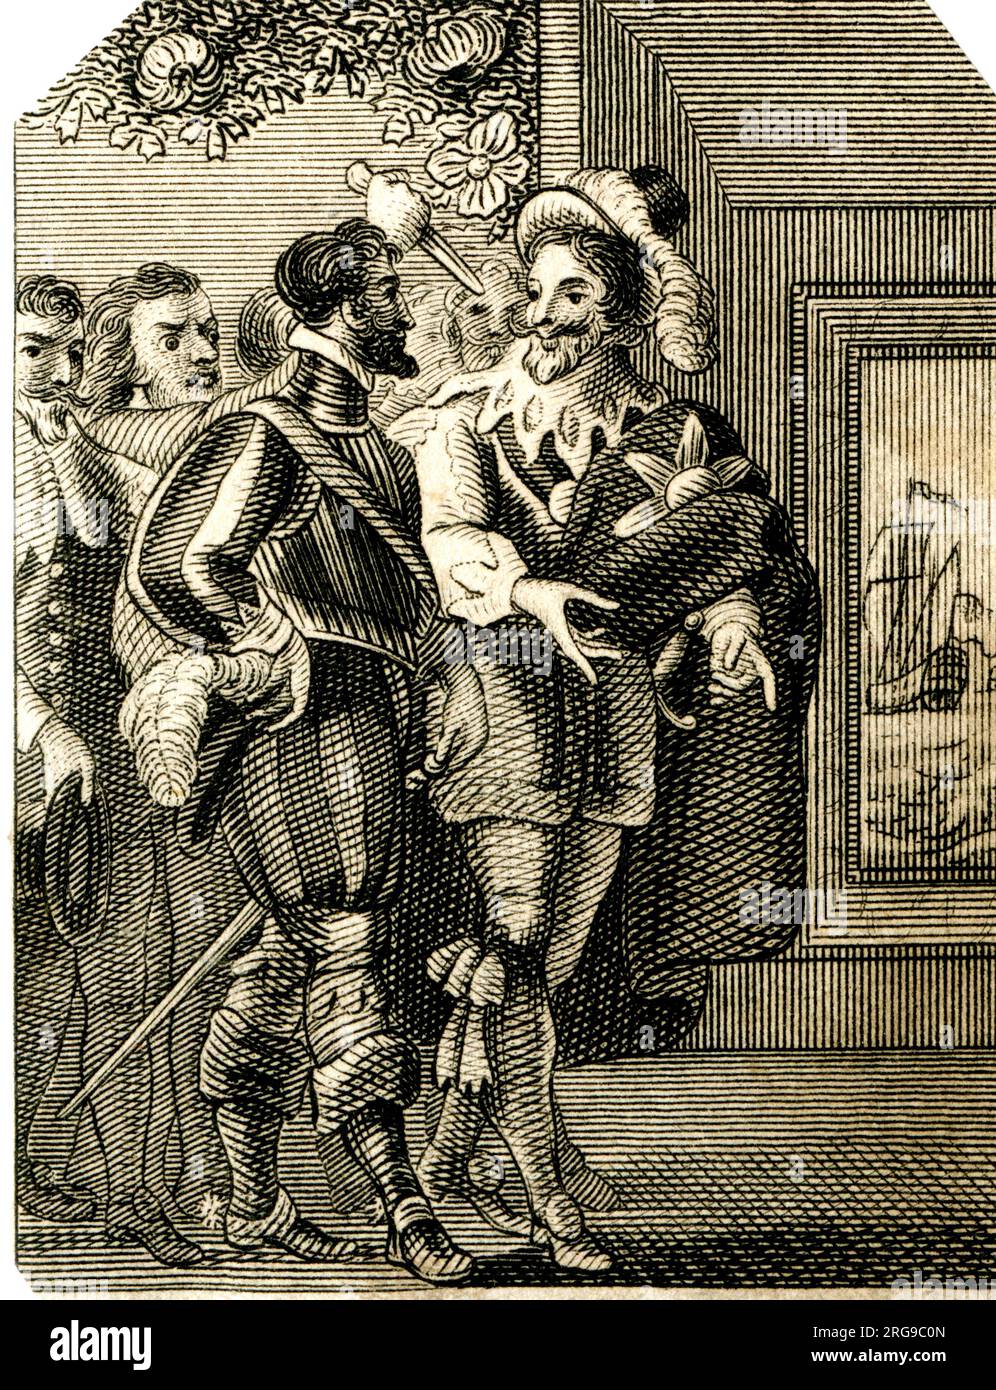 Ermordung des Herzog von Buckingham, Portsmouth, 23. August 1628 - Gravur aus dem 18. Jahrhundert Stockfoto